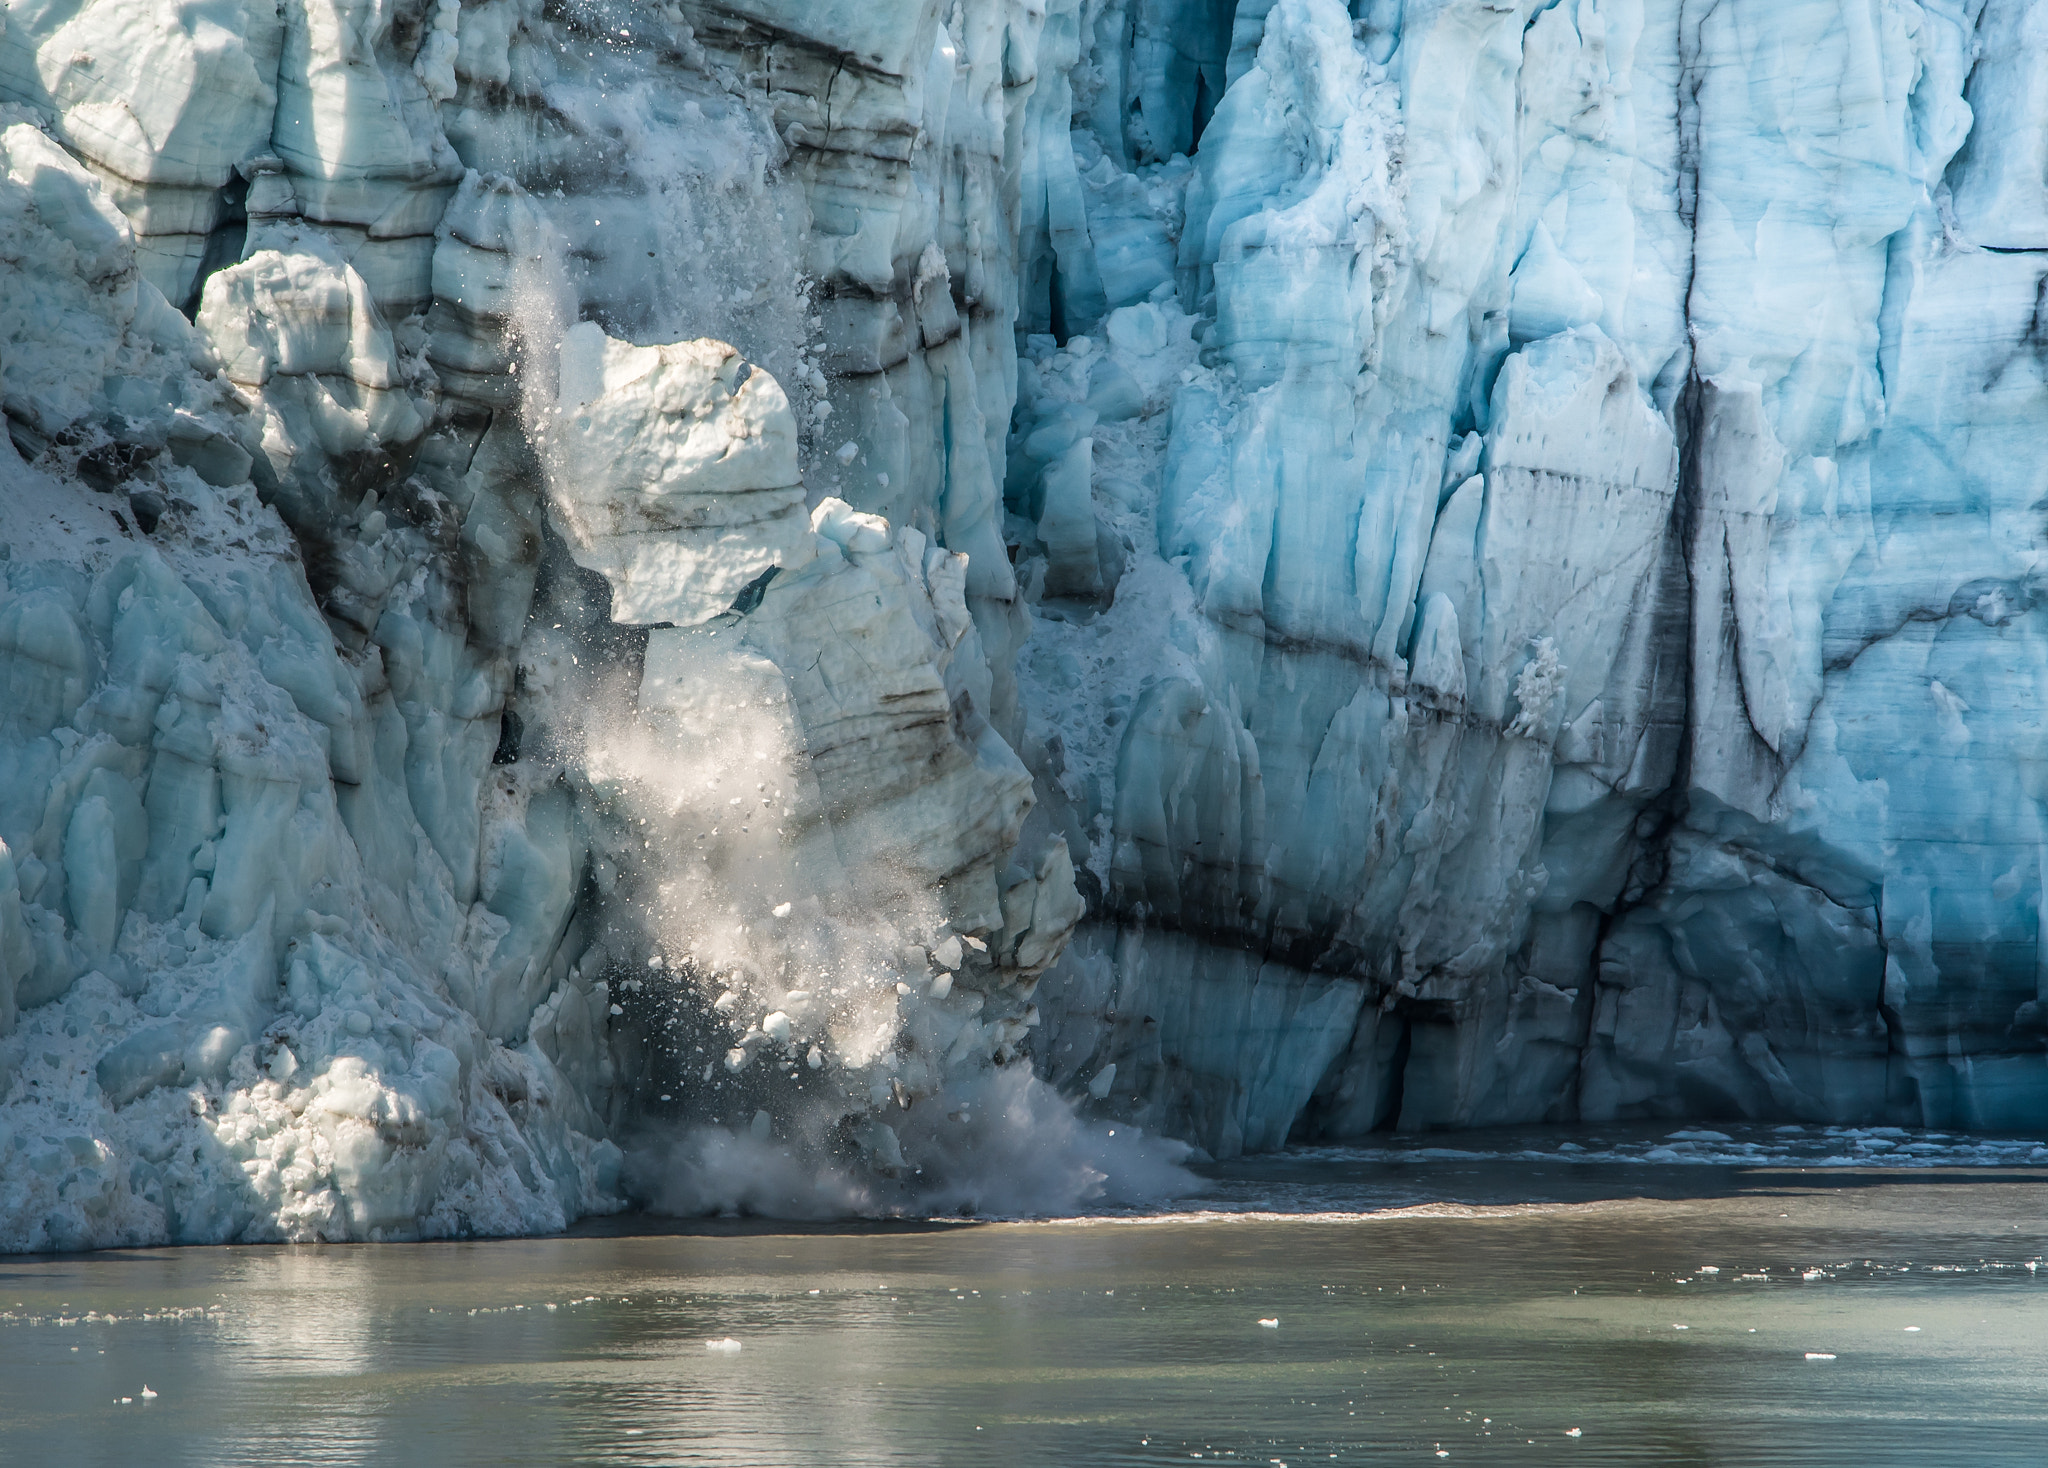 Nikon D750 + Sigma 150-500mm F5-6.3 DG OS HSM sample photo. Ice calving at glacier bay photography